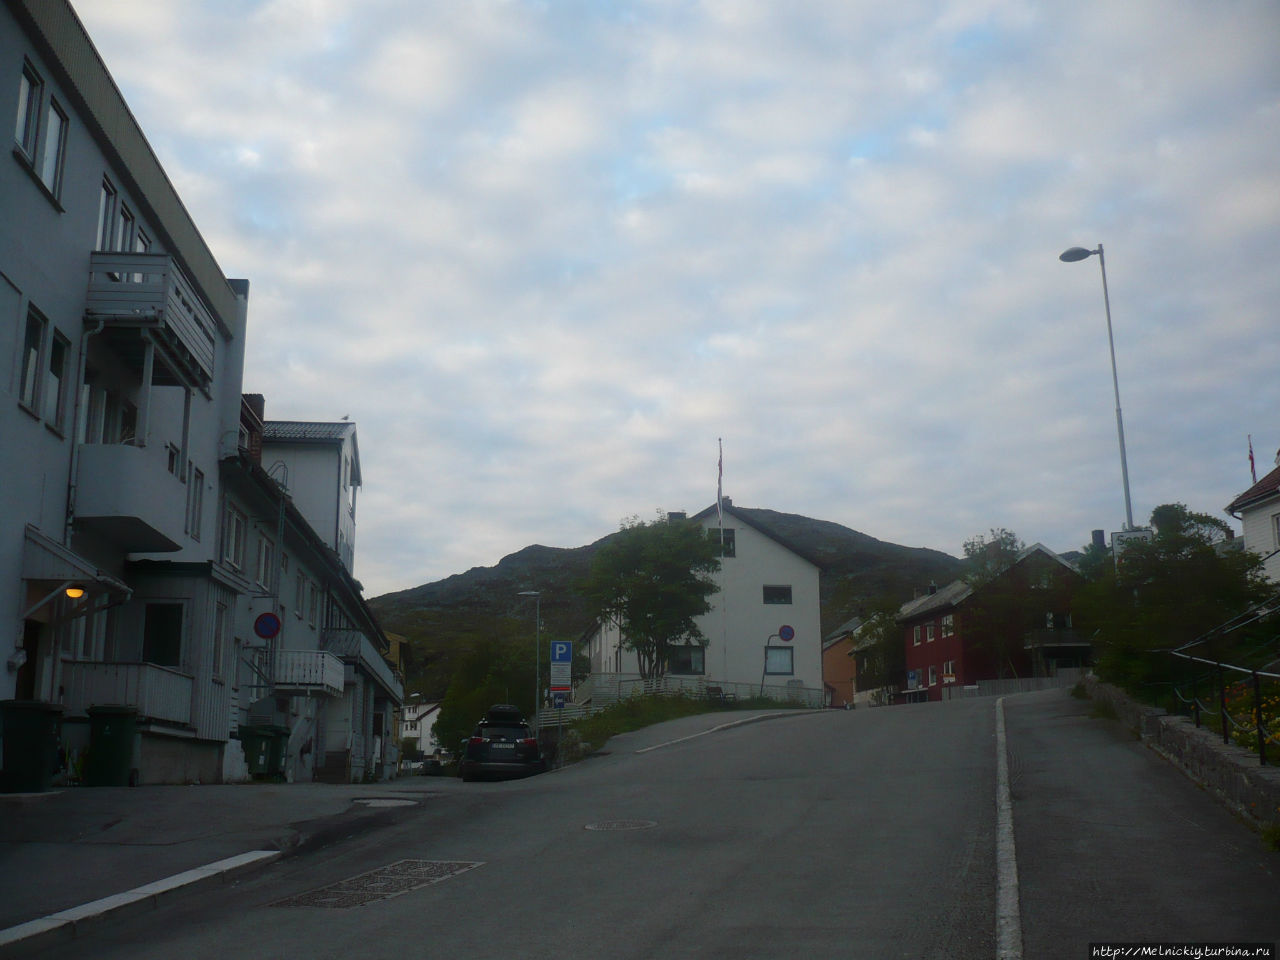 История Хаммерфеста- самого северного города мира Хаммерфест, Норвегия